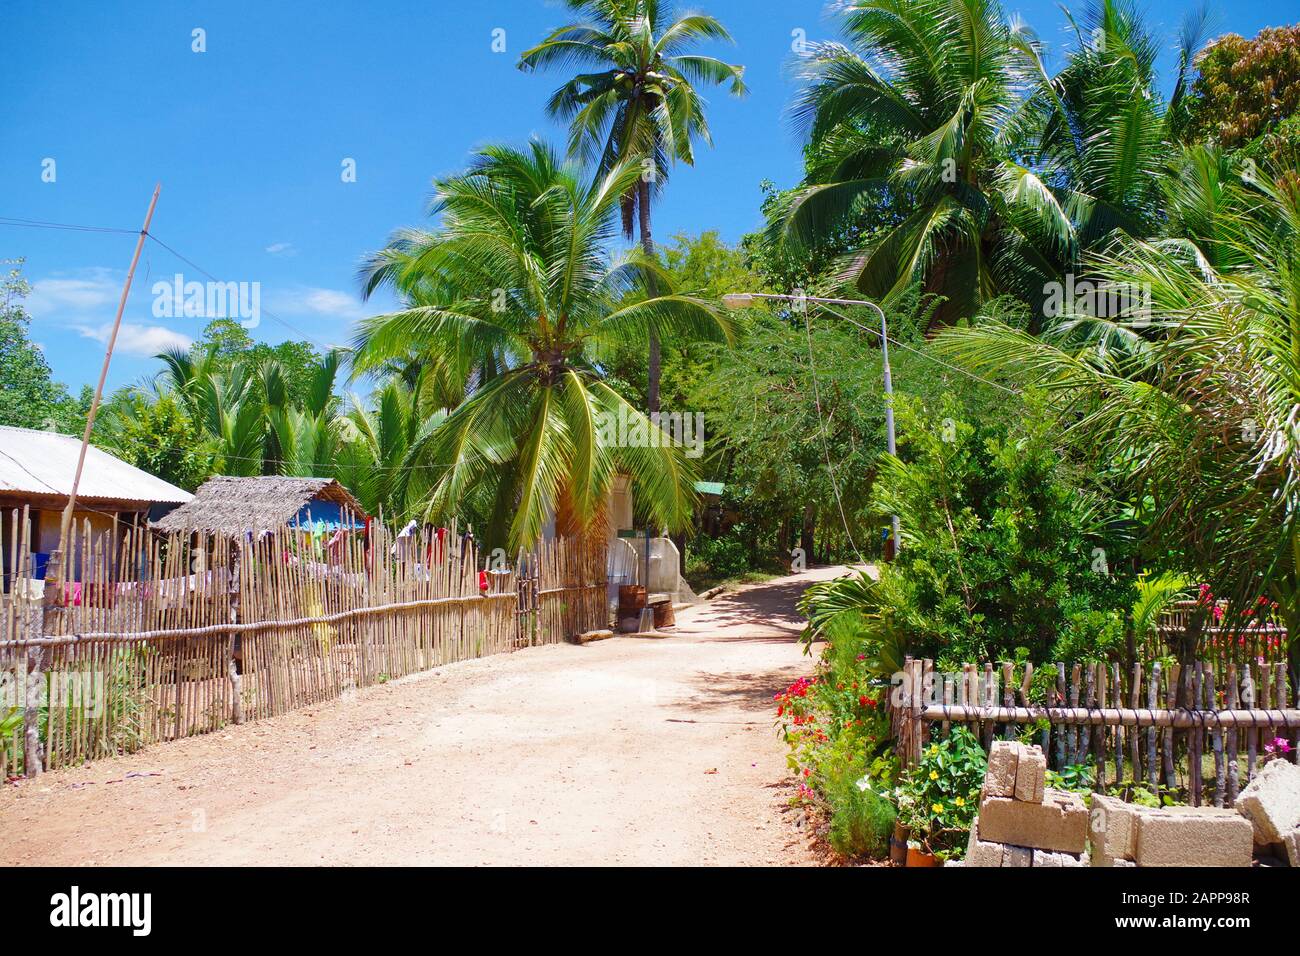 Un petit village sur une belle île aux Philippines. Plusieurs cottages en bois (maisons), entourés de courtes clôtures en bois et de nombreux palmiers. Banque D'Images